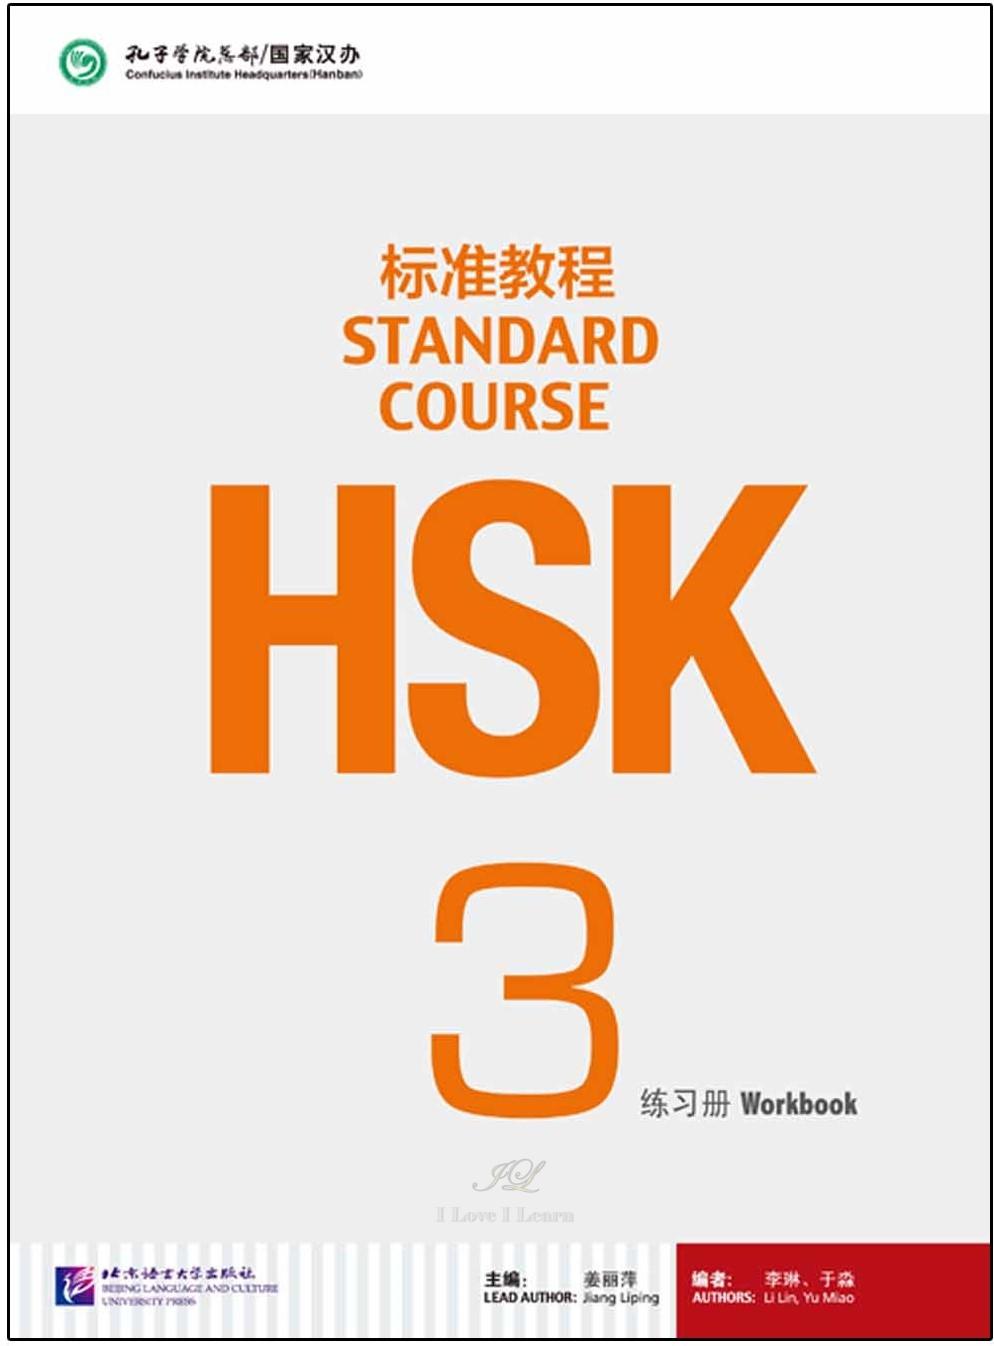 หนังสือข้อสอบ HSK Standard Course ระดับ 3 (แบบฝึกหัด + MP3) ชุดหนังสือรวมข้อสอบ HSK ระดับ 3 HSK Standard Course 3 Workbook (with 1MP3) HSK标准教程3 练习册（含1MP3）